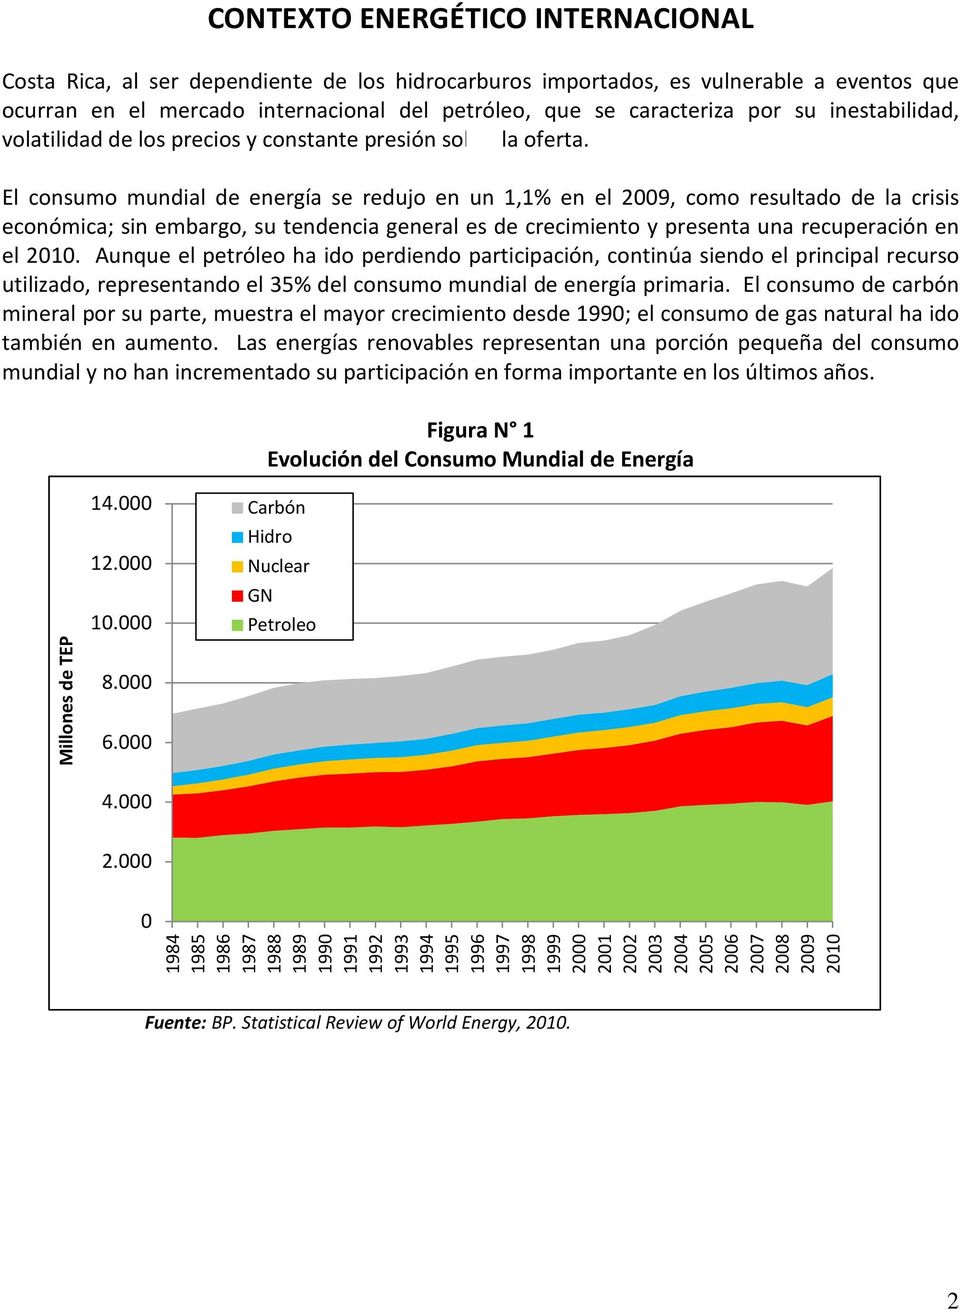 El consumo mundial de energía se redujo en un 1,1% en el 2009, como resultado de la crisis económica; sin embargo, su tendencia general es de crecimiento y presenta una recuperación en el 2010.